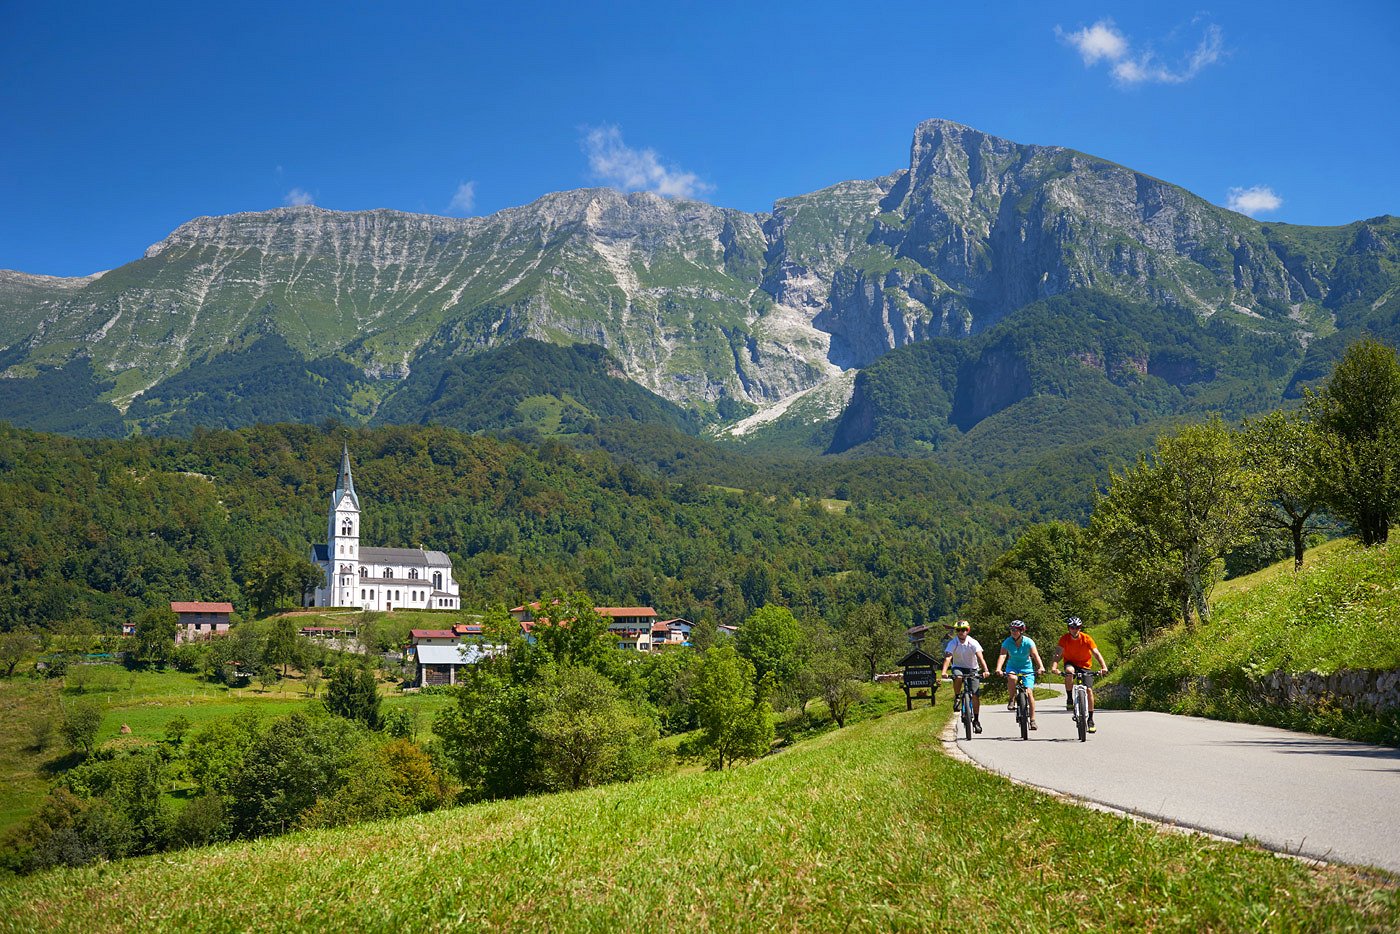 Radfahrer genießen die Aussicht in der Nähe des Dorfes Drežnica unter dem Berg Krn